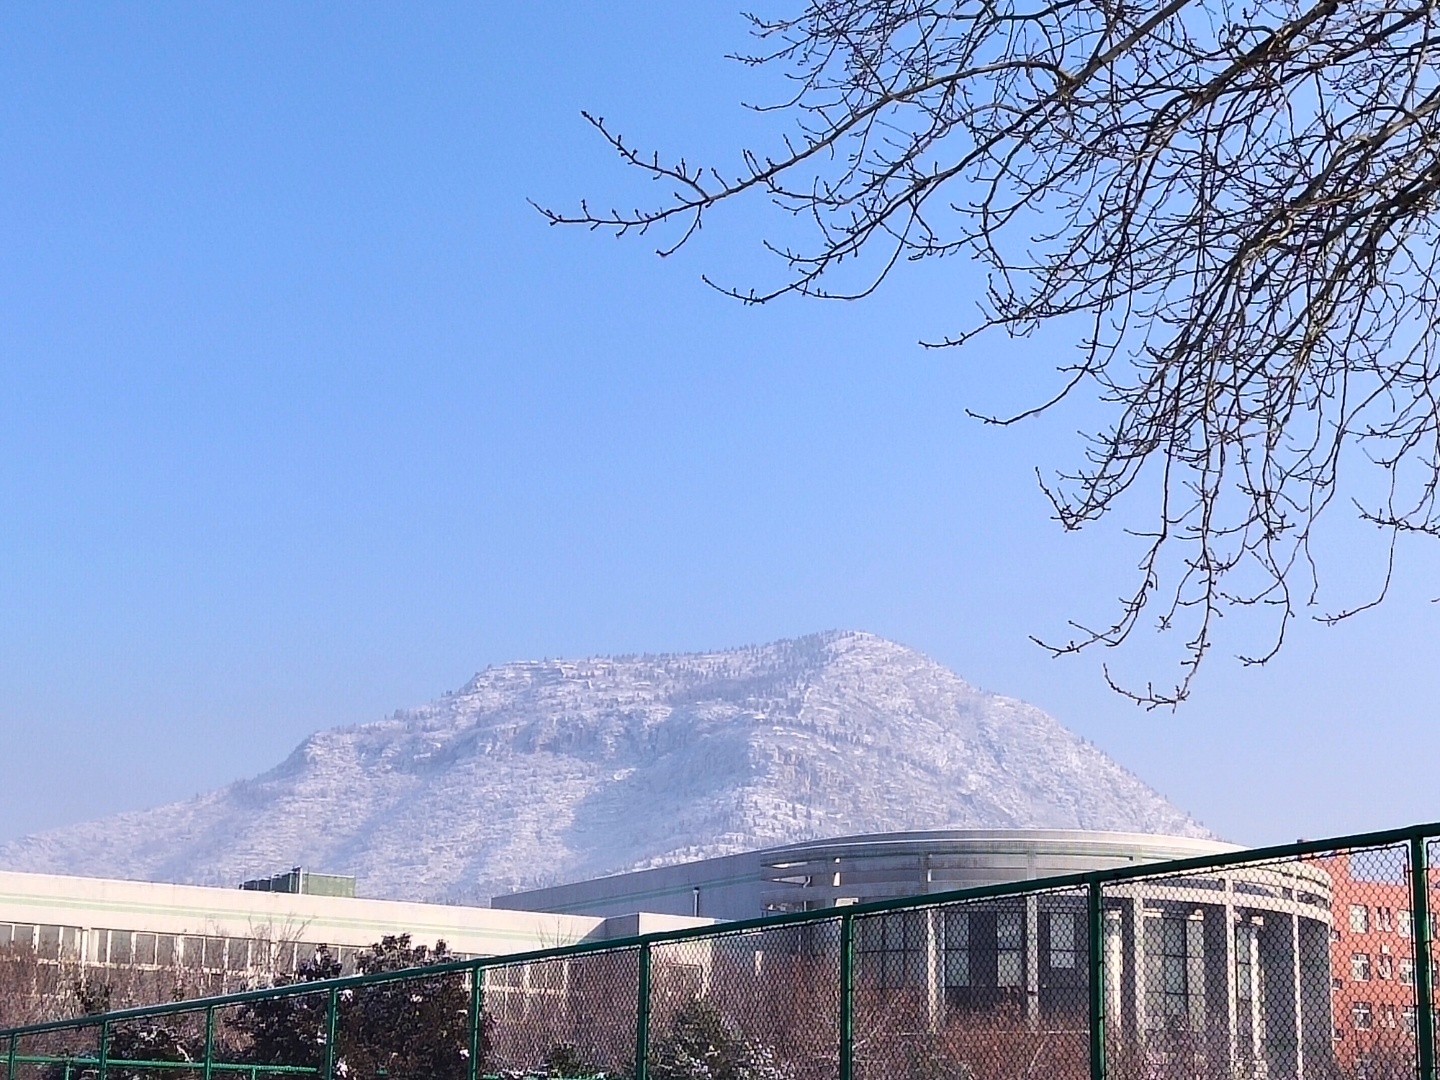 我在山东女子学院看到的第一场雪，白雪罩在学校后面的山峰上，很有意韵。张霄雅 山东女子学院文化传播学院